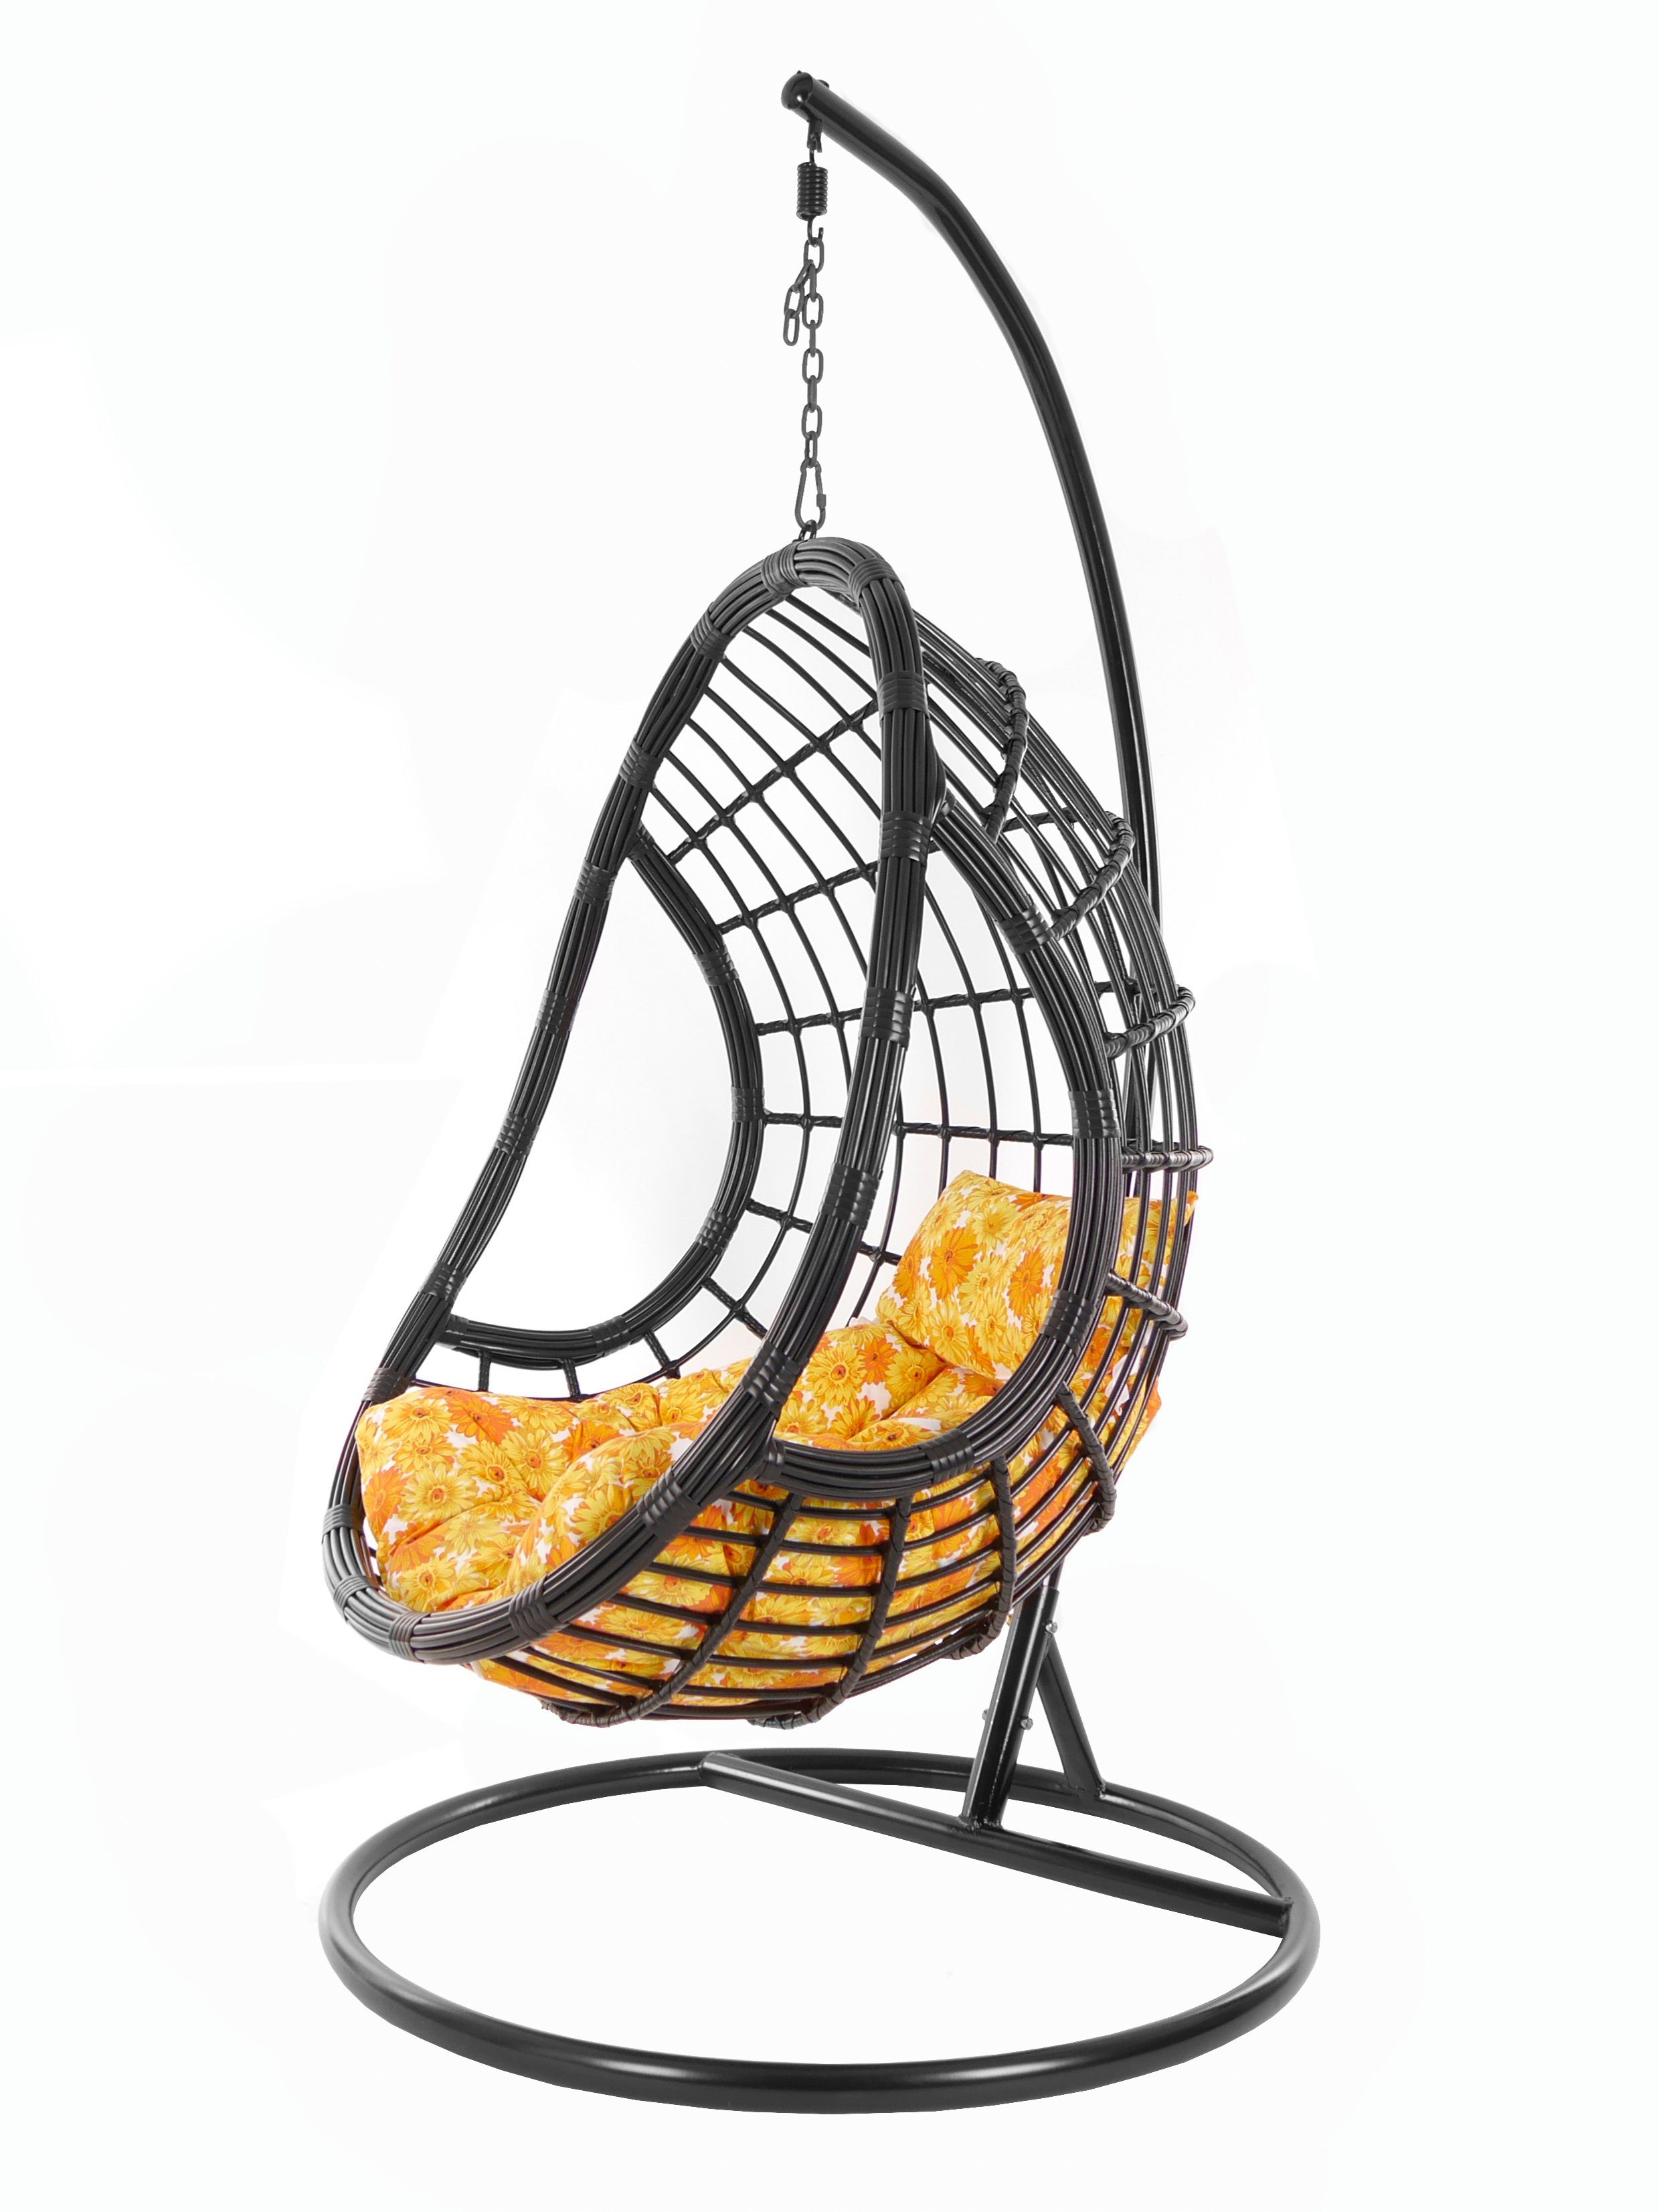 KIDEO Hängesessel PALMANOVA black, Swing Design Schwebesessel, sonnenblumen Gestell Loungemöbel, mit Hängesessel und sunflower) schwarz, Kissen, (2300 edles Chair